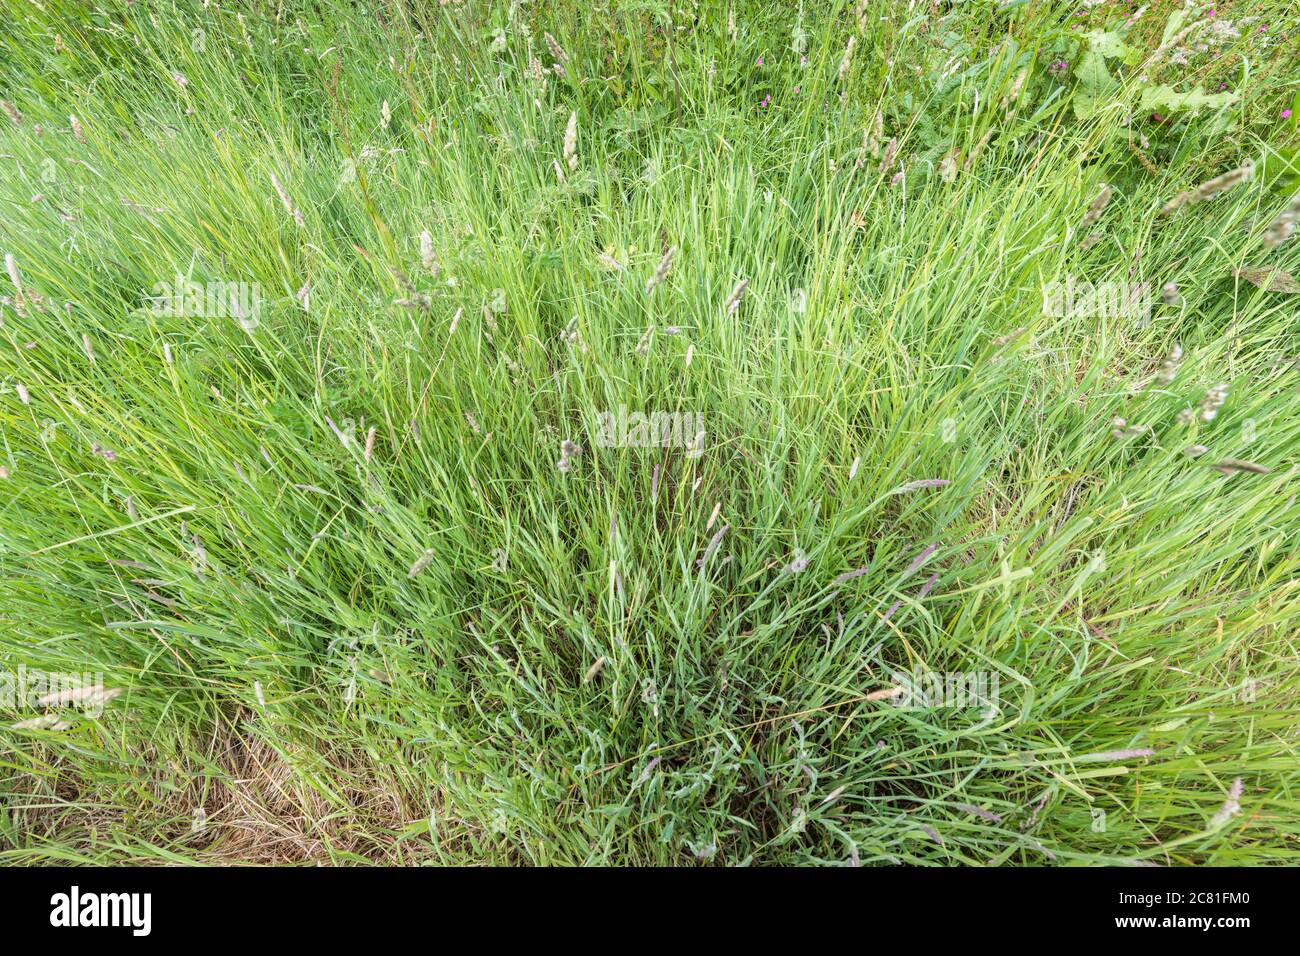 Tiro angular de un tuft de hierba grande / larga en un borde de hierba de camino rural, enfatizando la profundidad. Metáfora sobrecultivada, escondiéndose entre las malas hierbas. Foto de stock